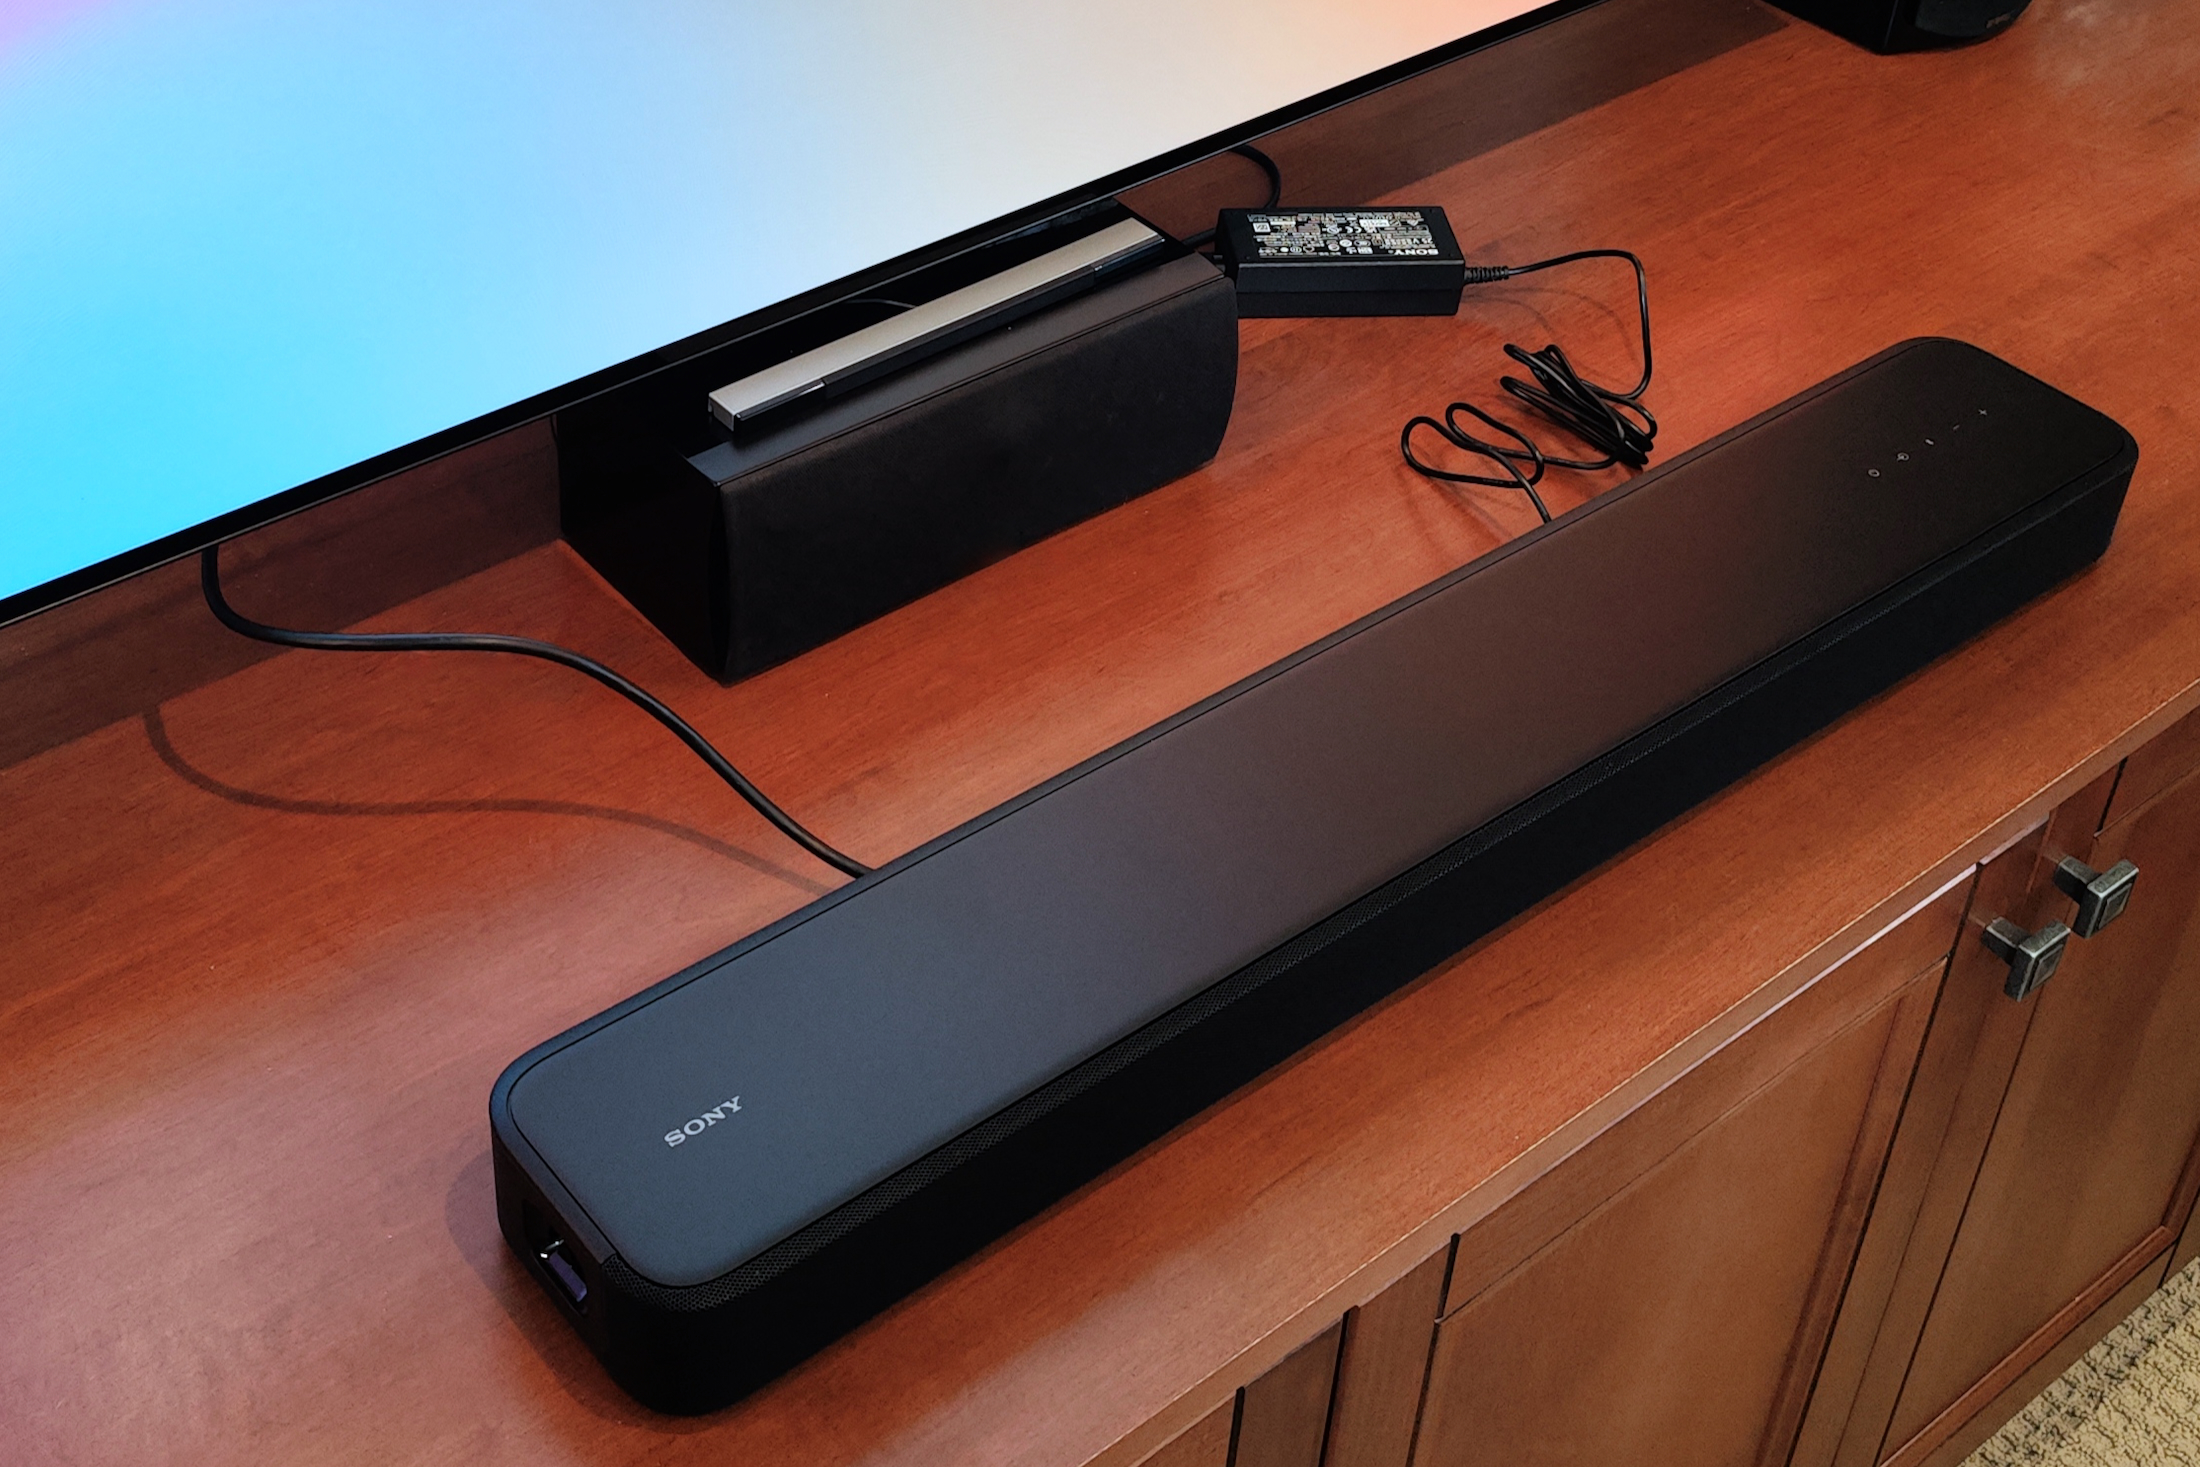 Prisnedsættelse Få kontrol Mursten Sony HT-S2000 soundbar review: Sony trades smarts for bigger audio